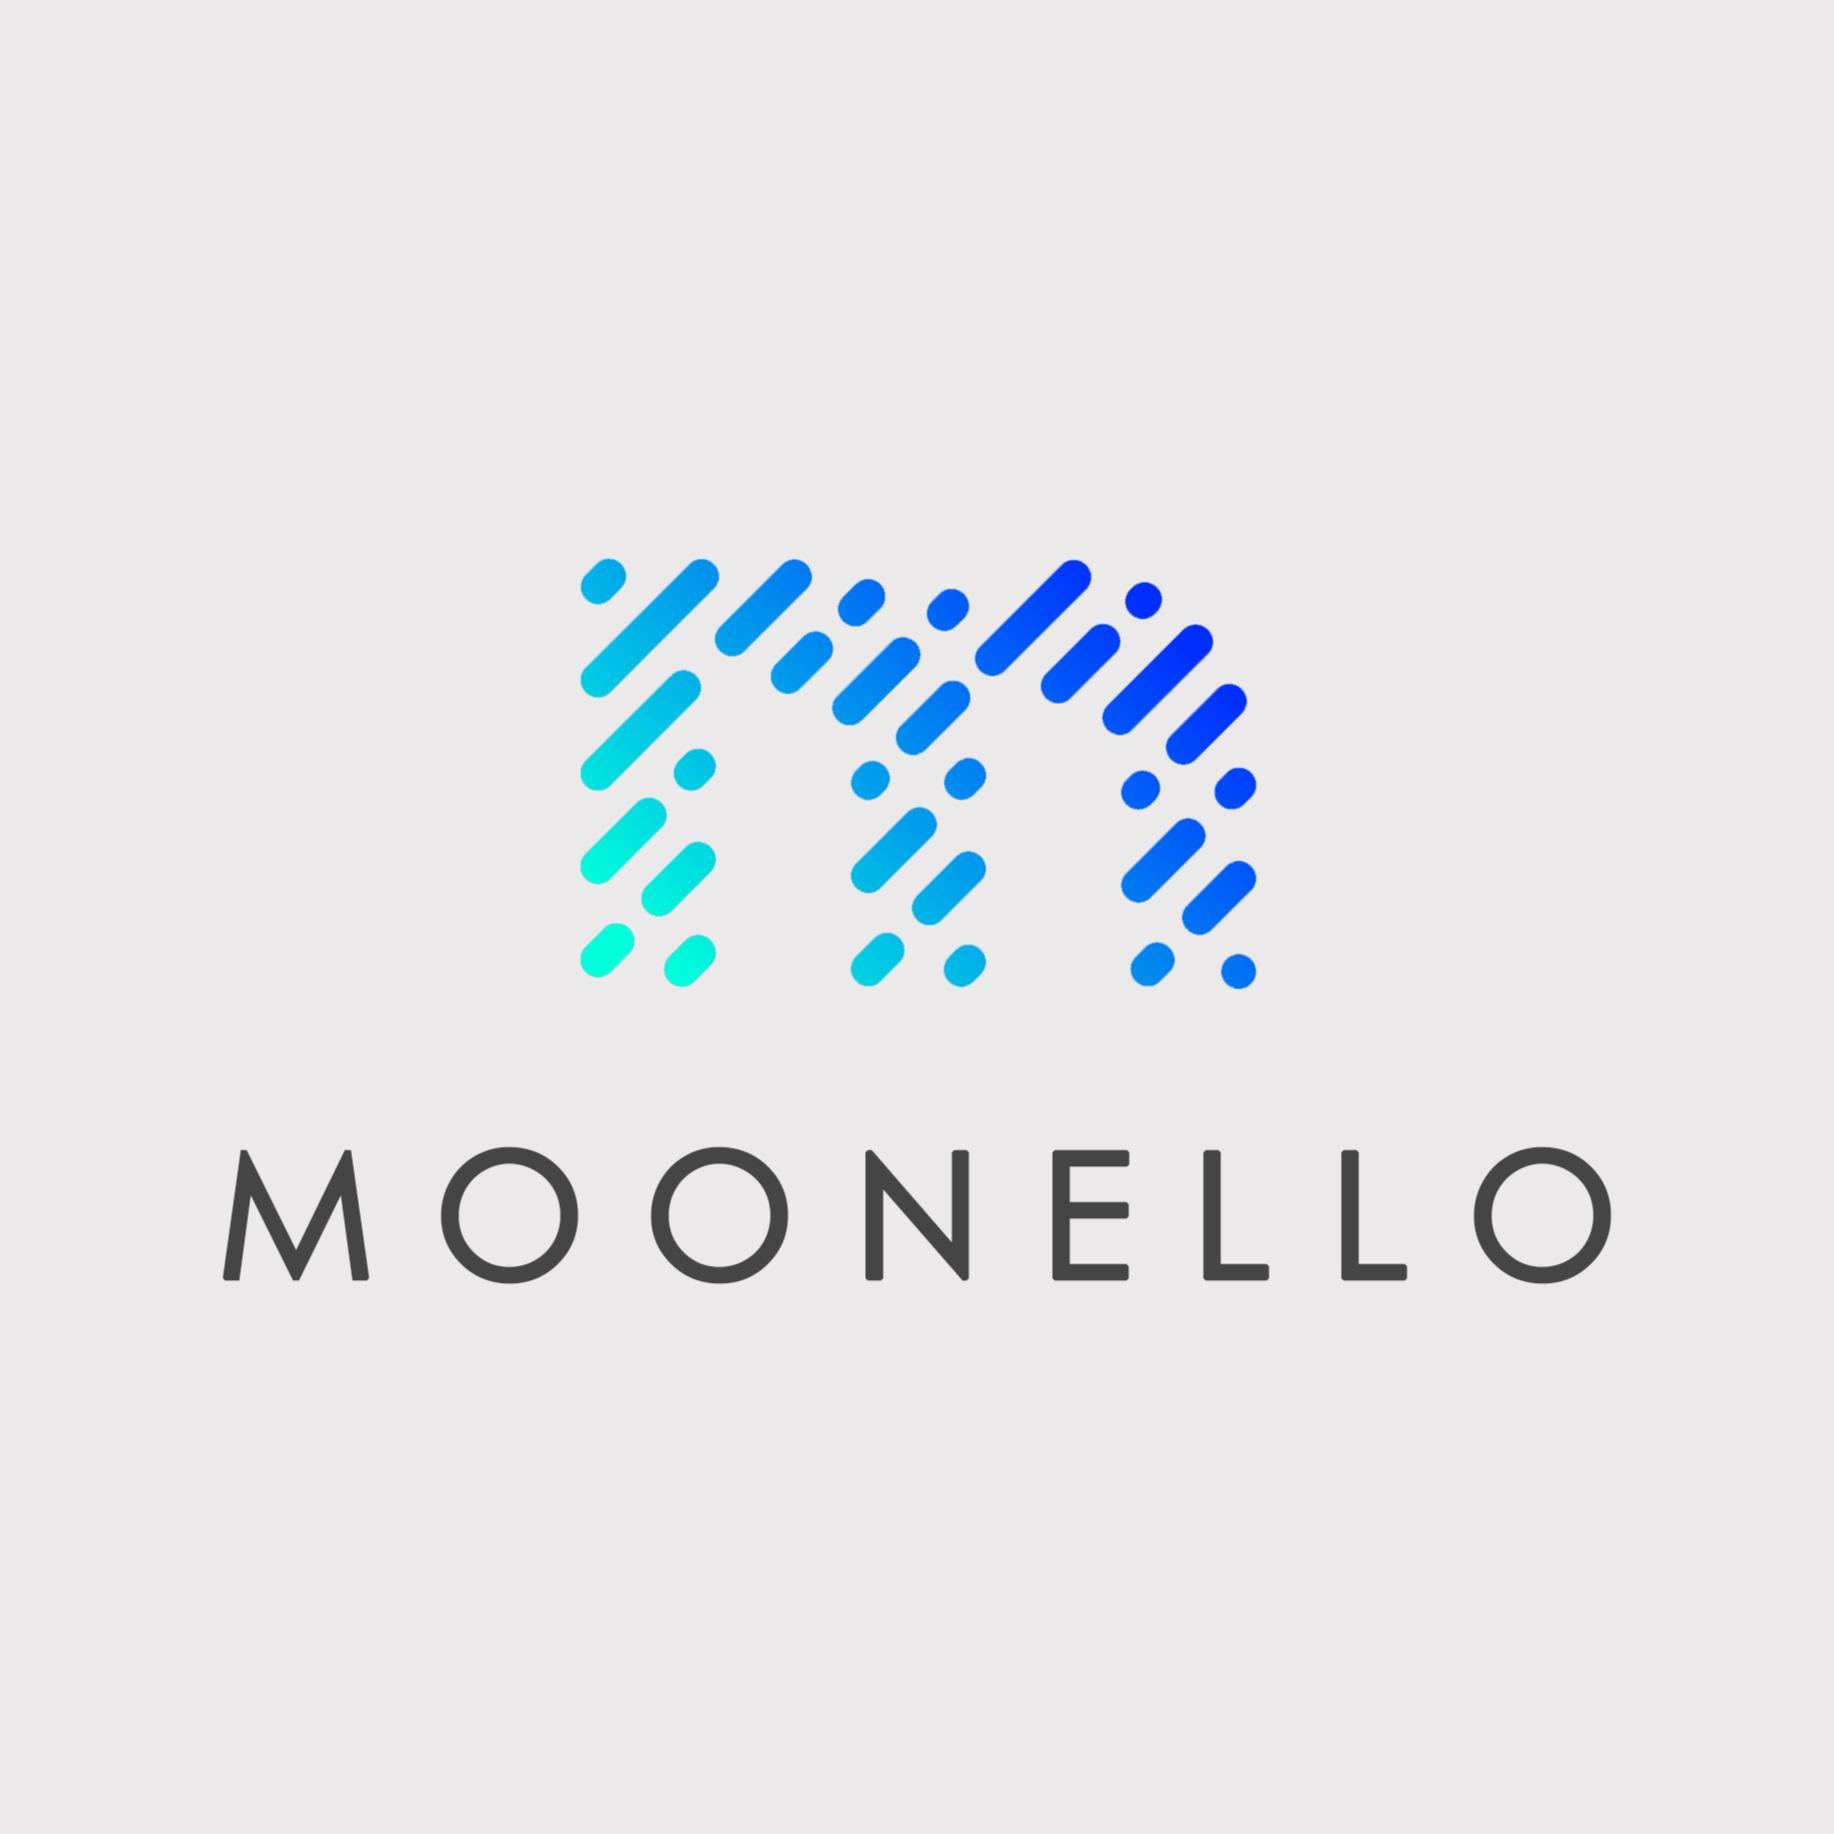 Moonello - Royal Oak, MI 48067 - (248)264-7014 | ShowMeLocal.com